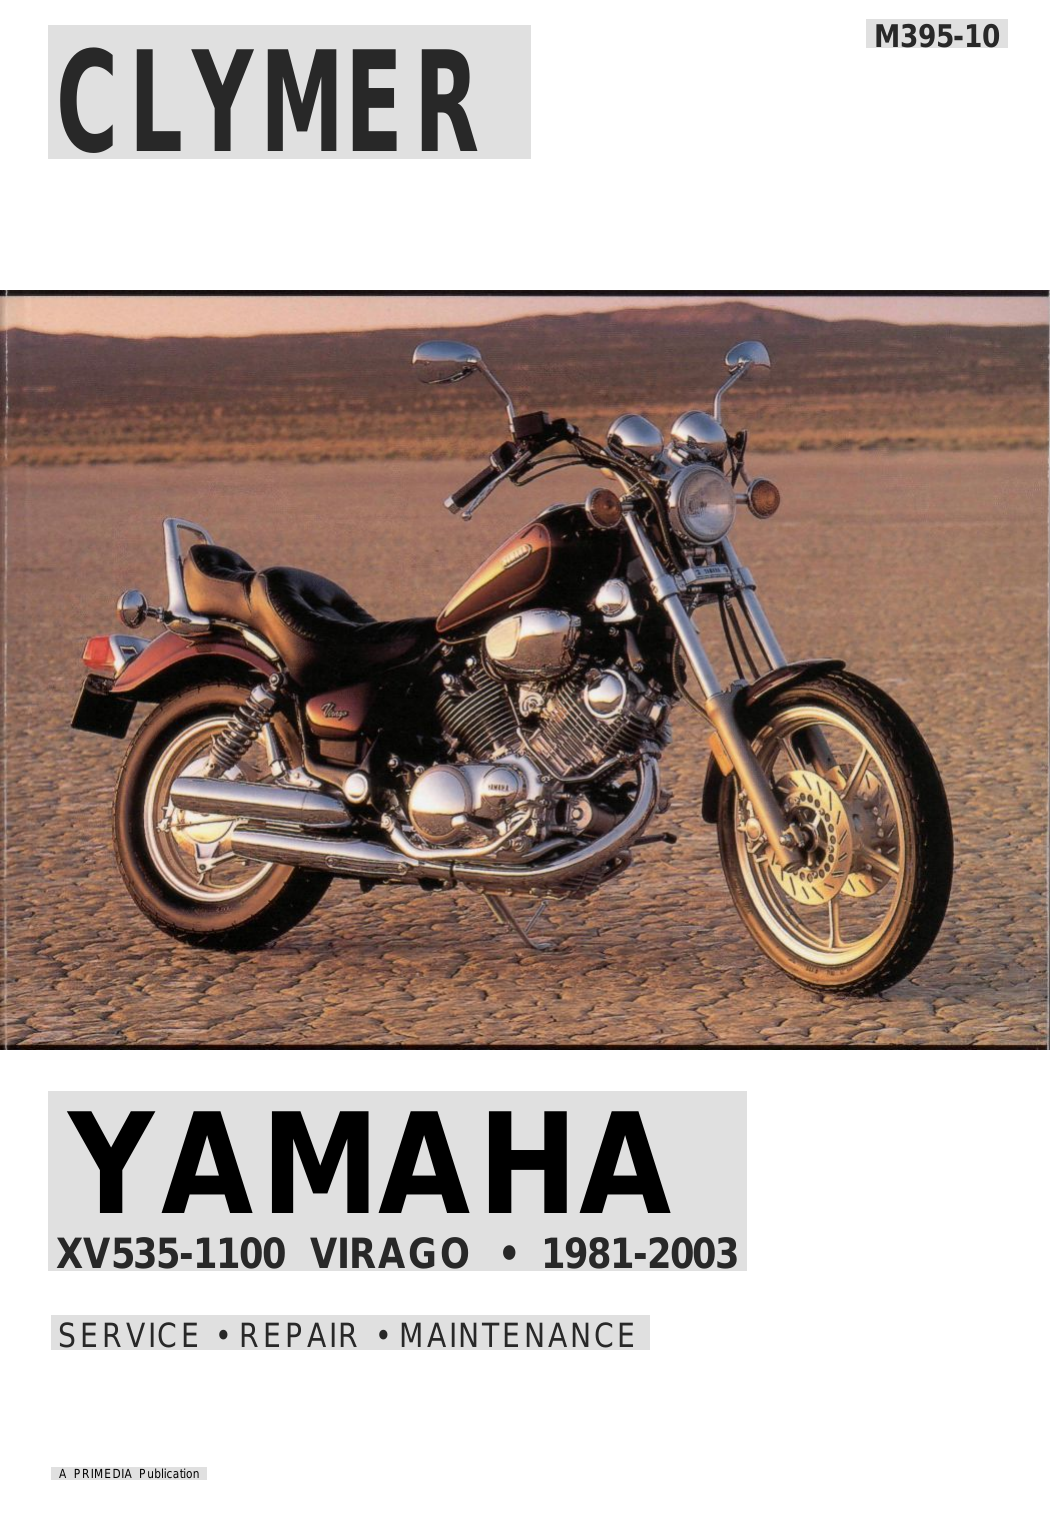 1981-2003 Yamaha XV1000 Virago service manual Preview image 6